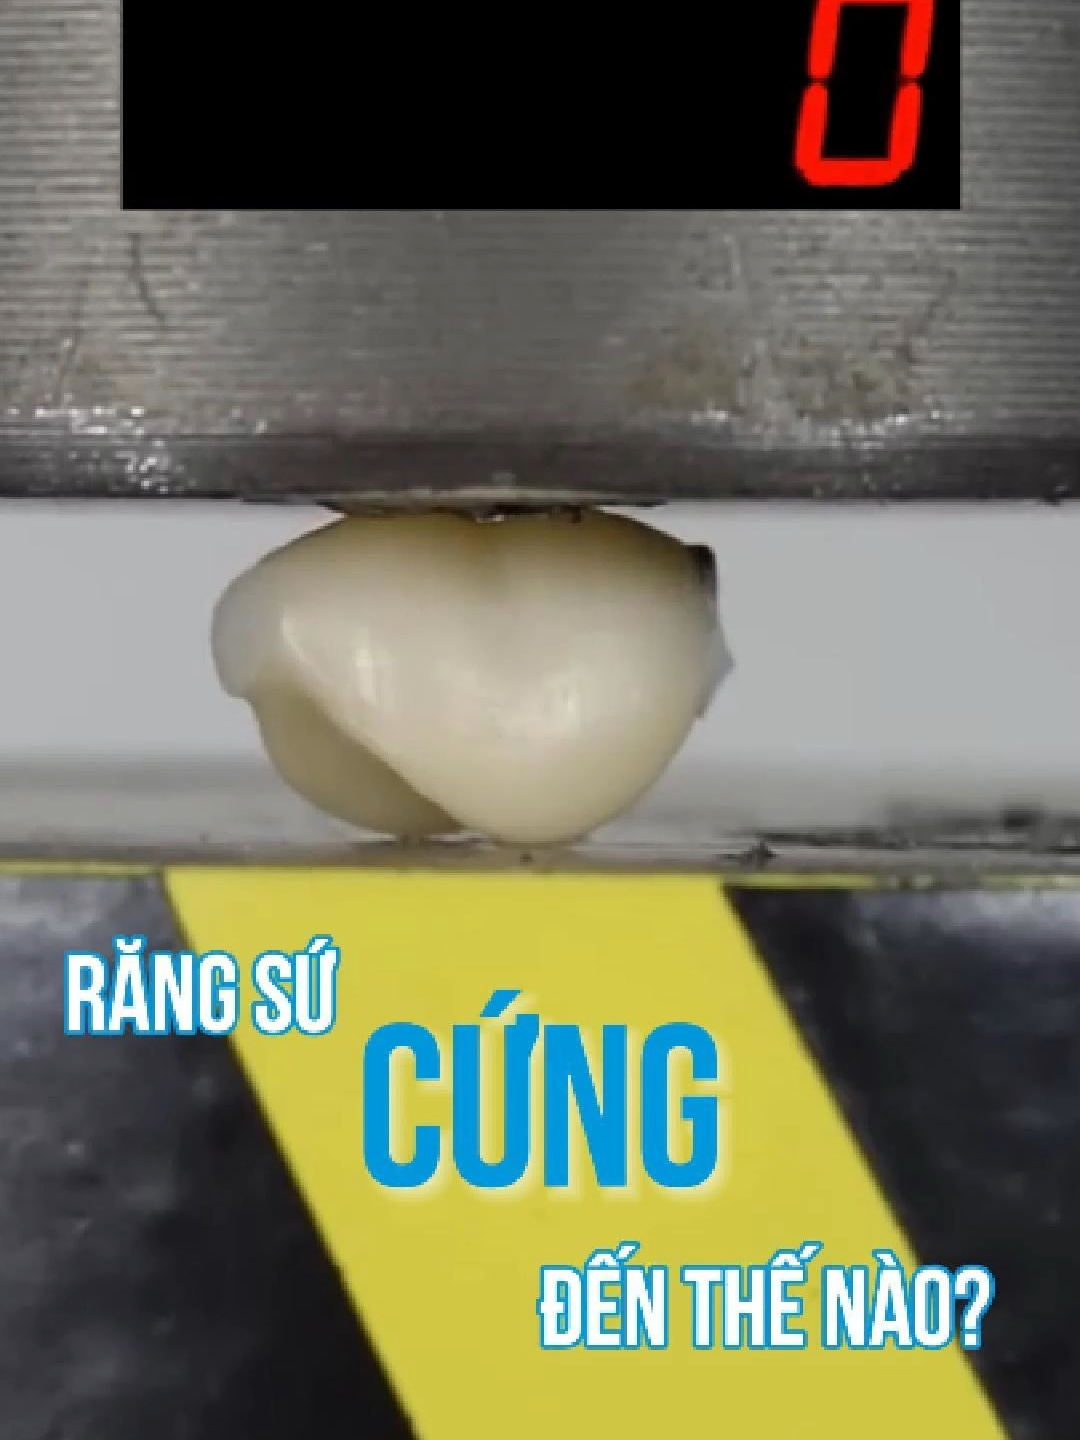 RĂNG SỨ DỄ GÃY VỠ?? Cùng test thử độ cứng của răng sứ nhé!  #nhakhoashark #nhakhoauytin #rangsu #kienthuc